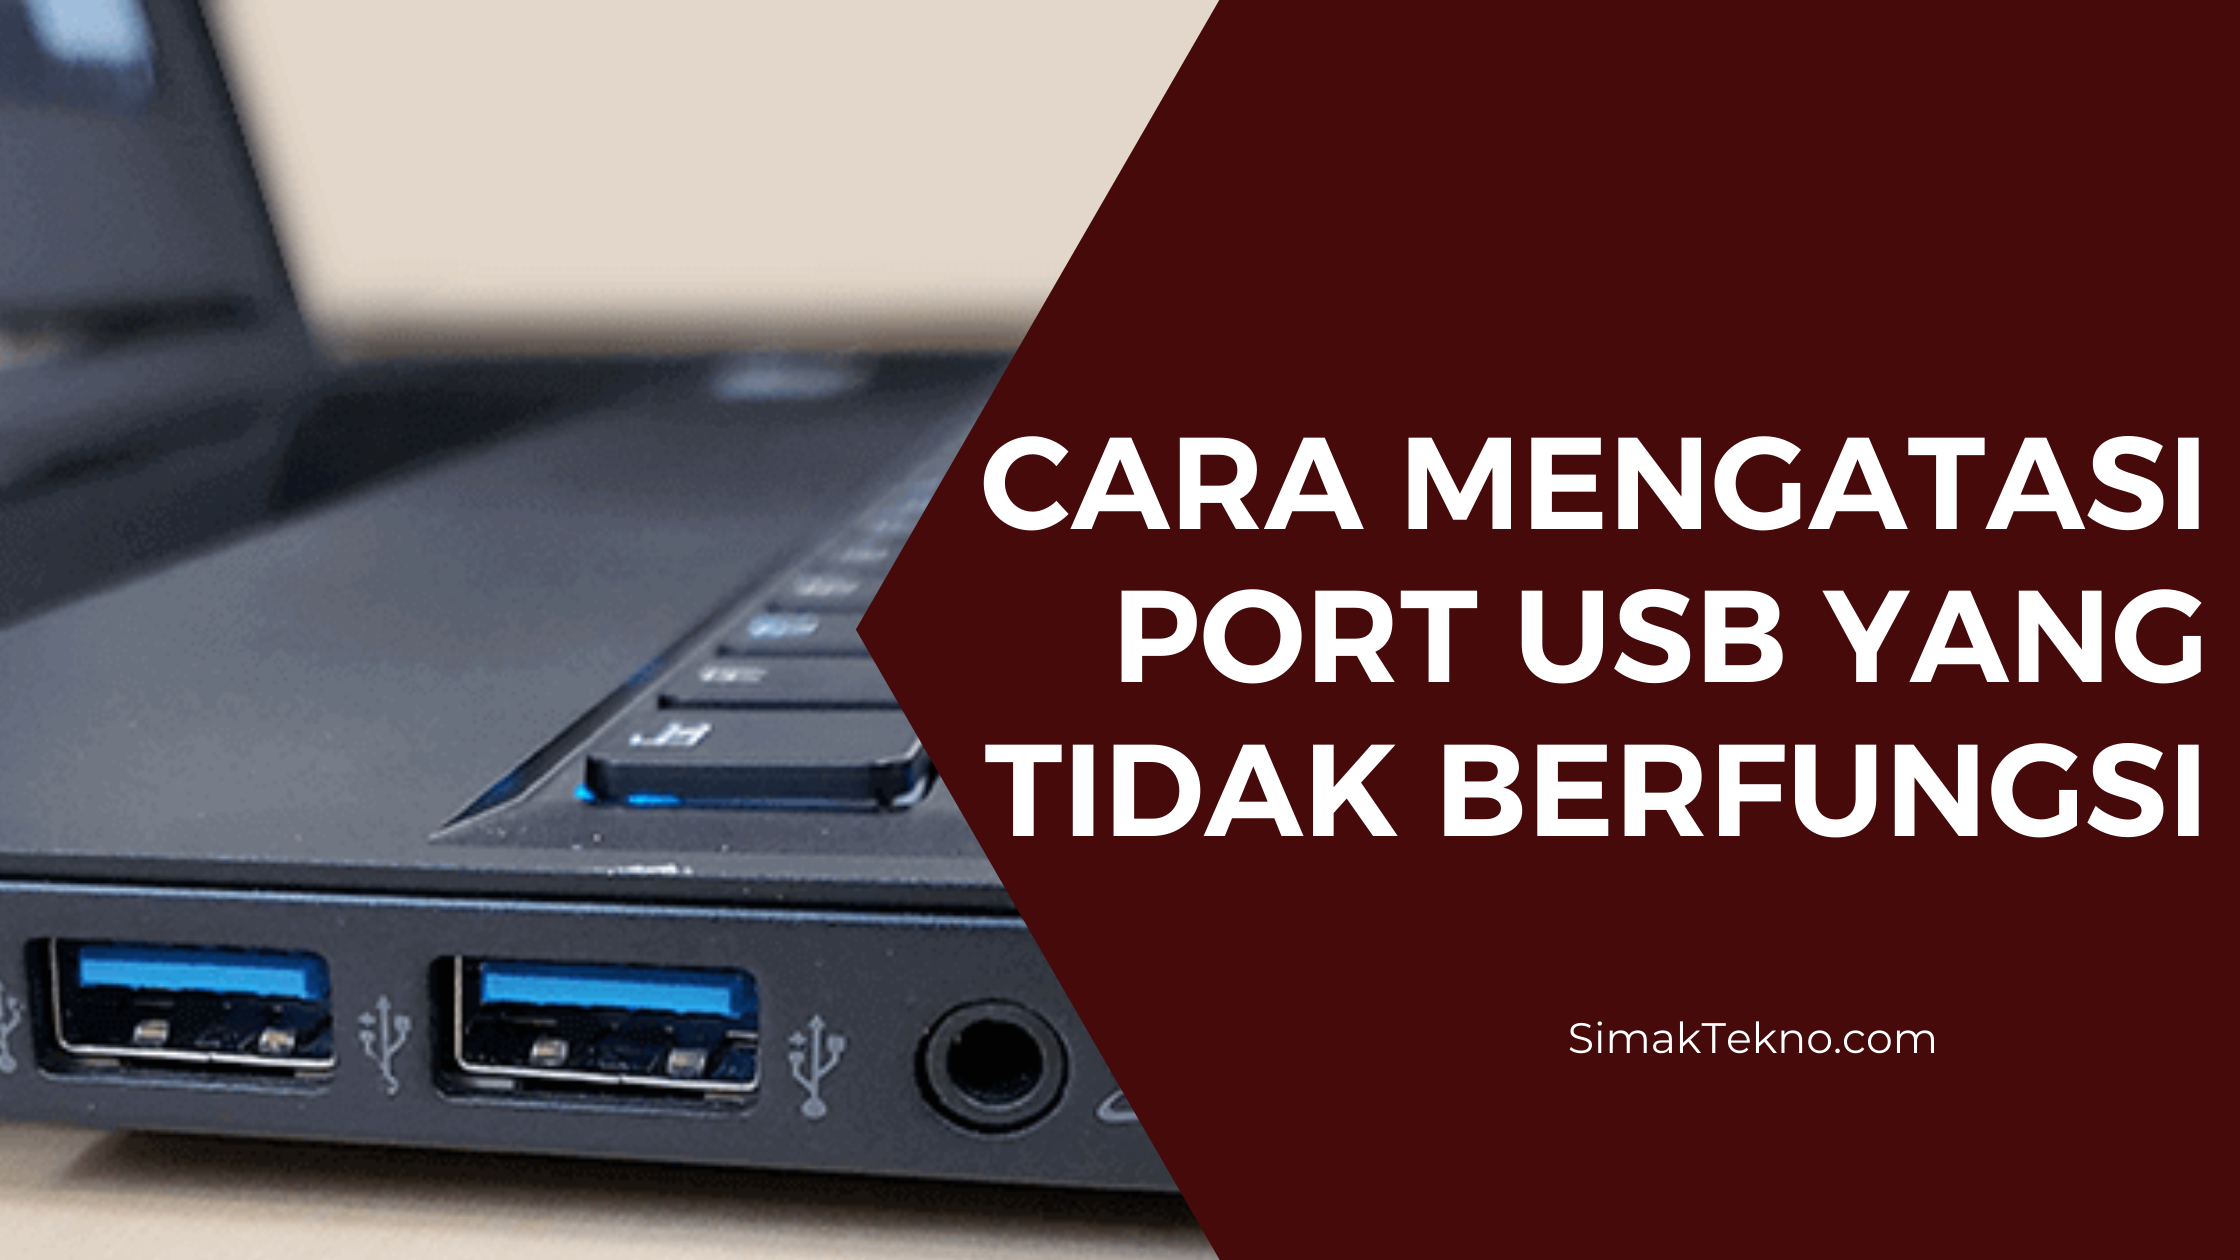 Cara Mengatasi Port USB Tida Berfungsi